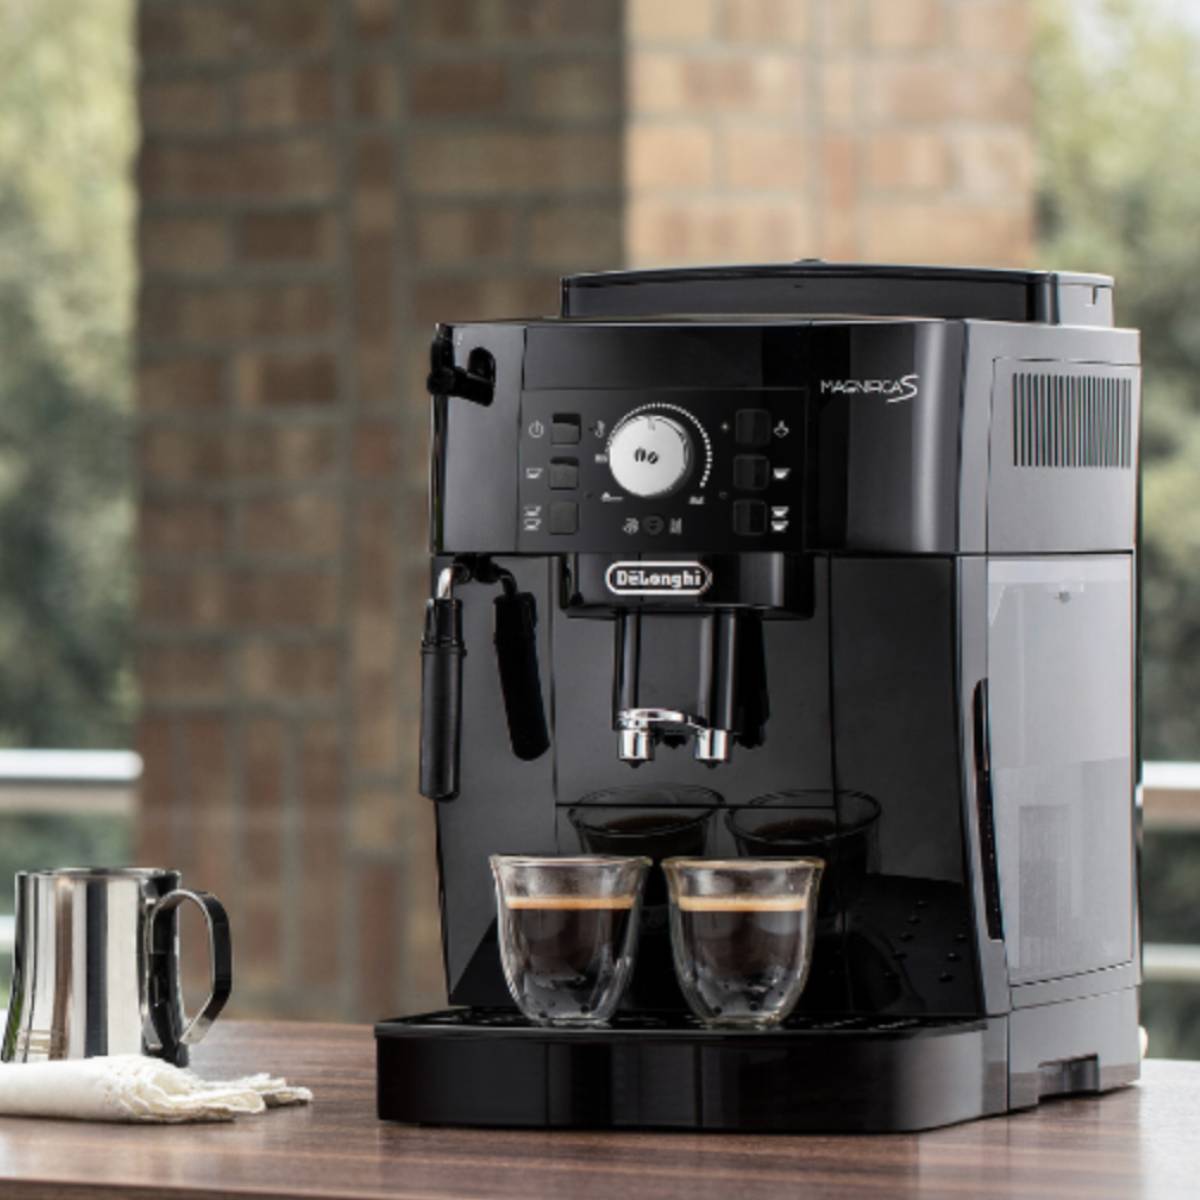 La cafetera De'Longhi Magnifica S ahora por 200€ menos; huye de las cápsulas y disfruta el café perfecto